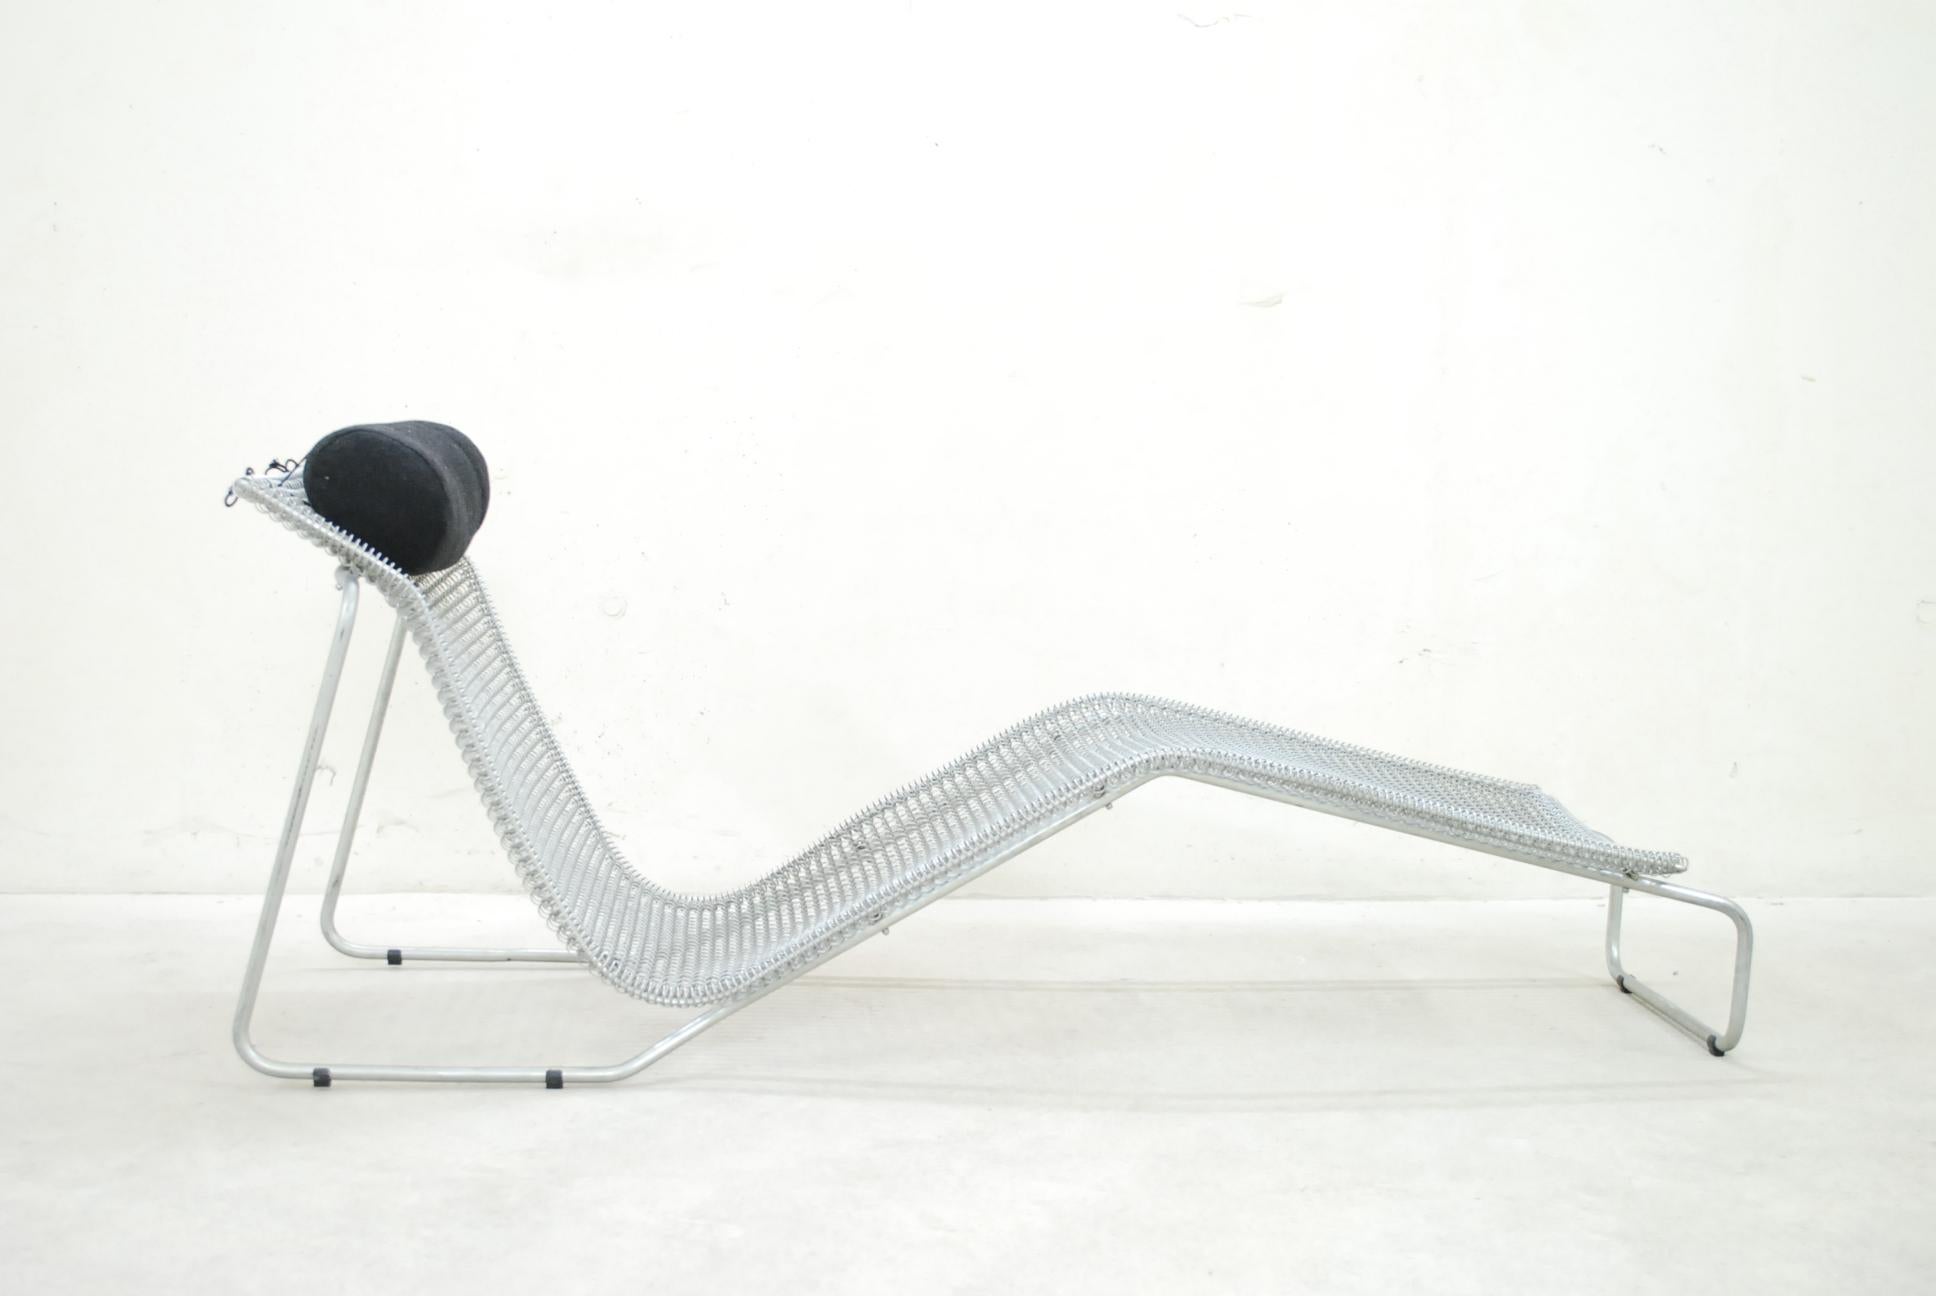 Cette chaise spéciale a été conçue par l'architecte et designer Niall O'Flynn pour le fabricant néerlandais Spectrum en 1997.
Ces chaises n'ont été produites qu'à quelques exemplaires.
La chaise Ruffian est très rare et difficile à trouver et